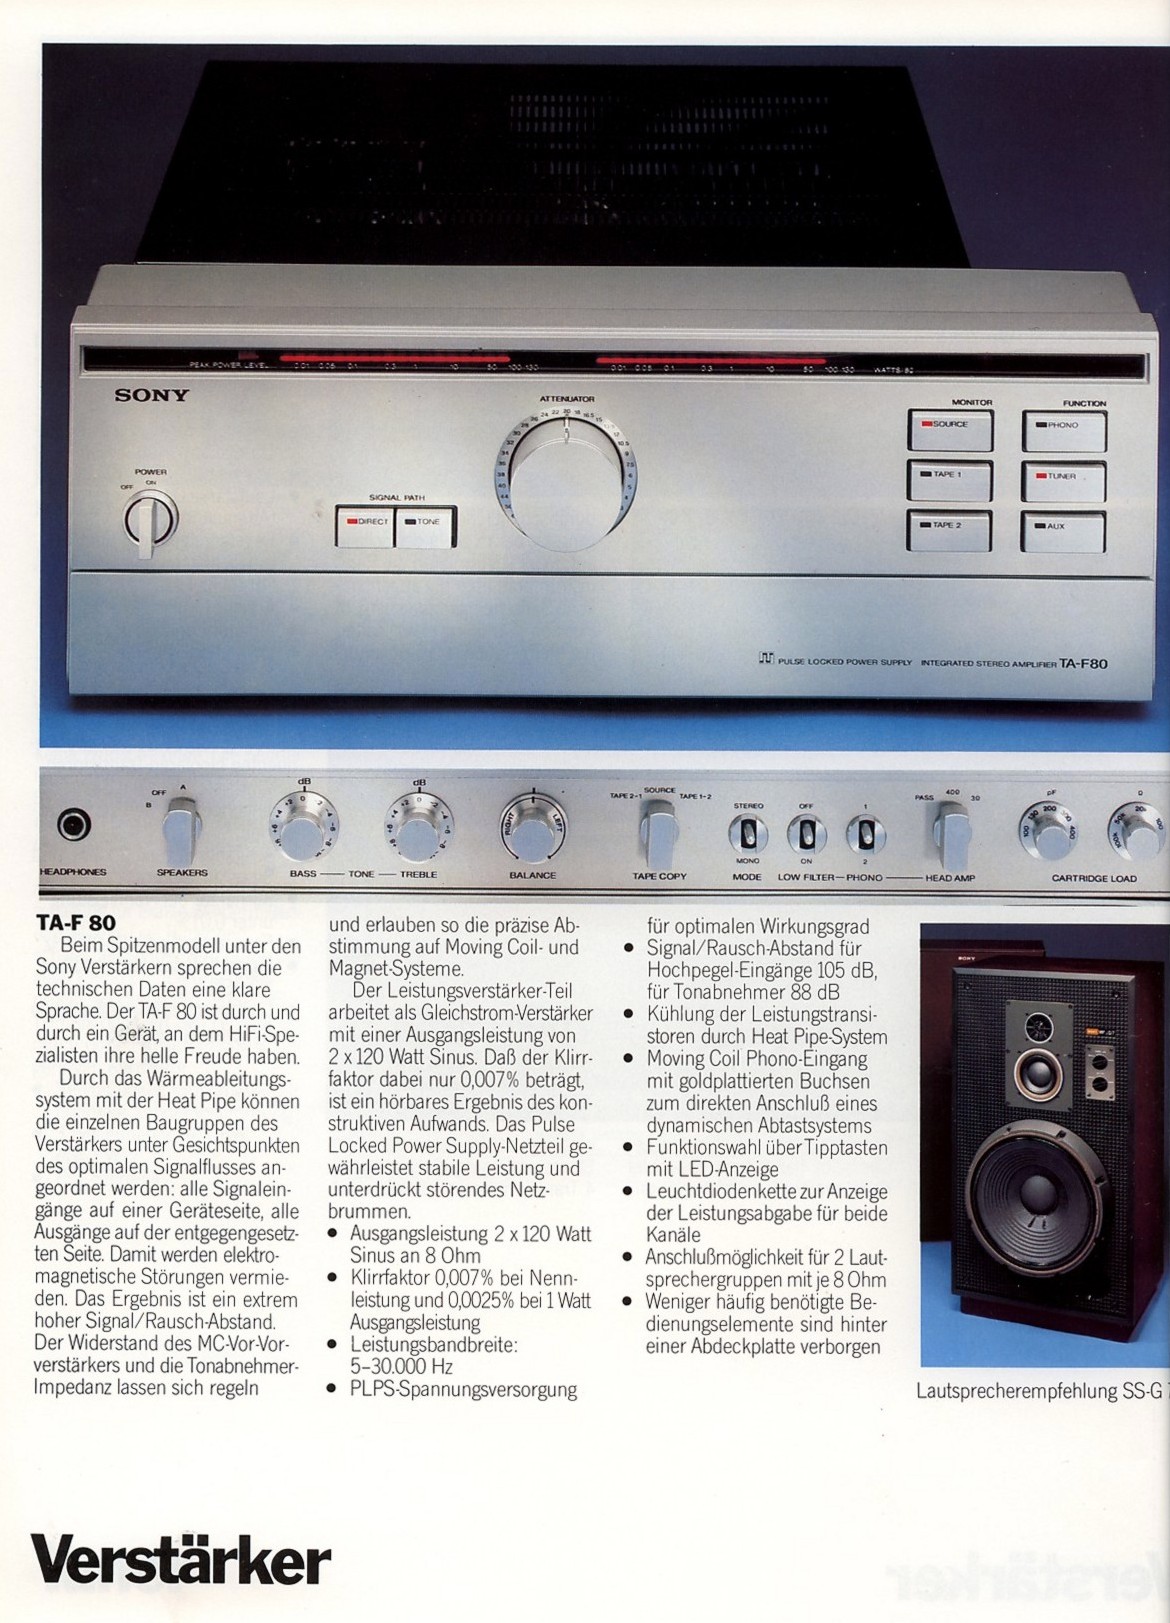 Sony TA-F 80-Prospekt-1981.jpg